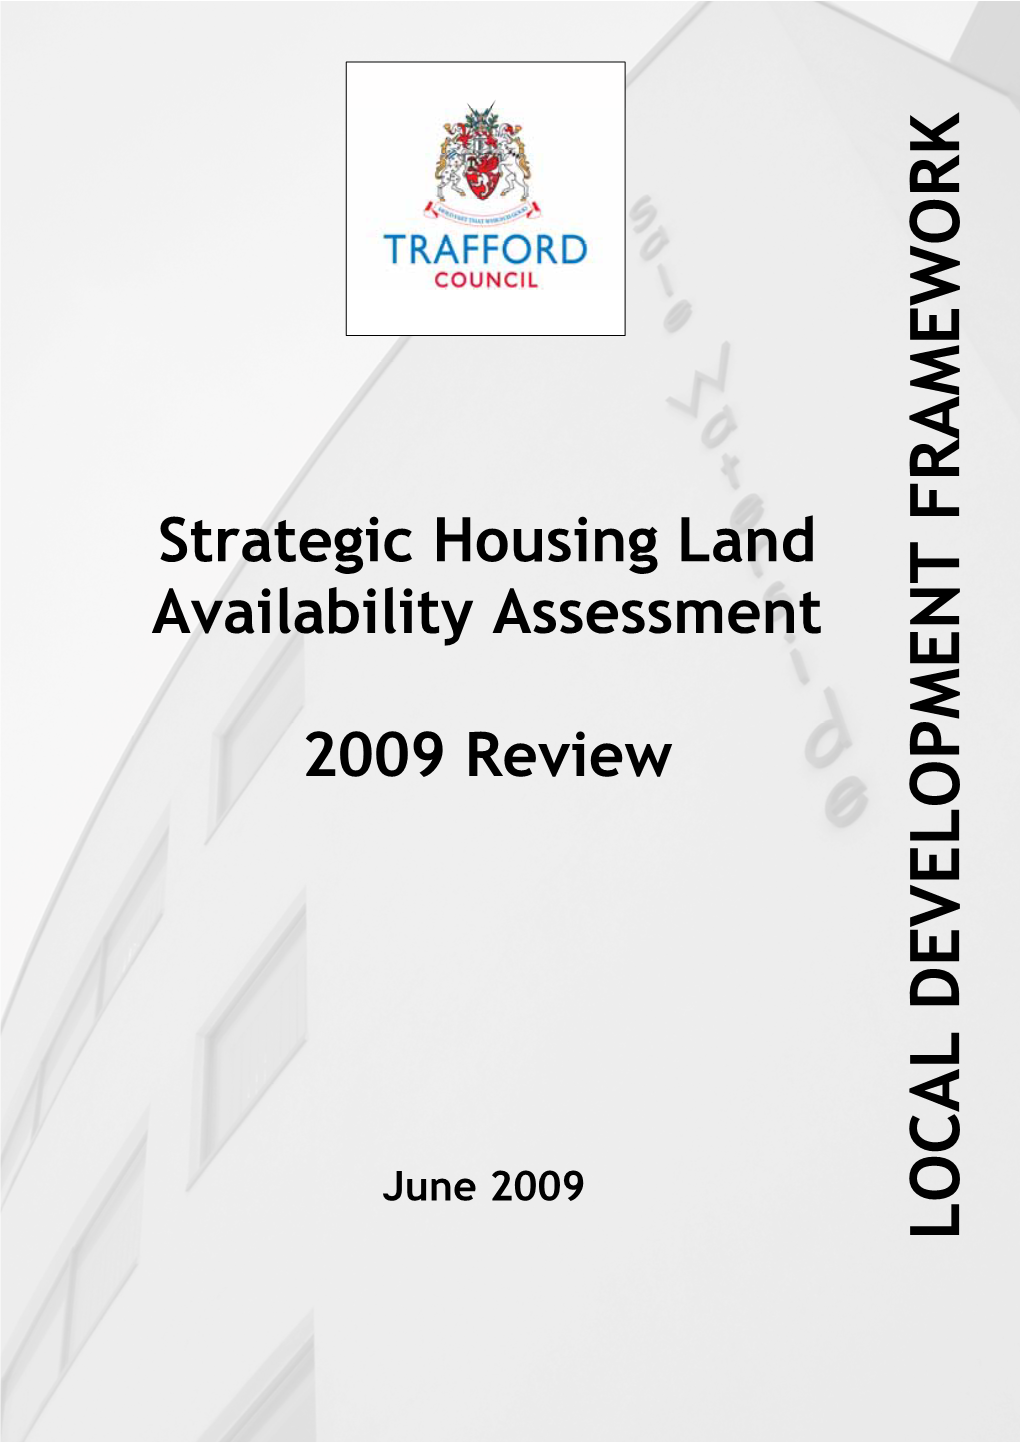 Trafford Strategic Housing Land Availability Assessment (June 2009)